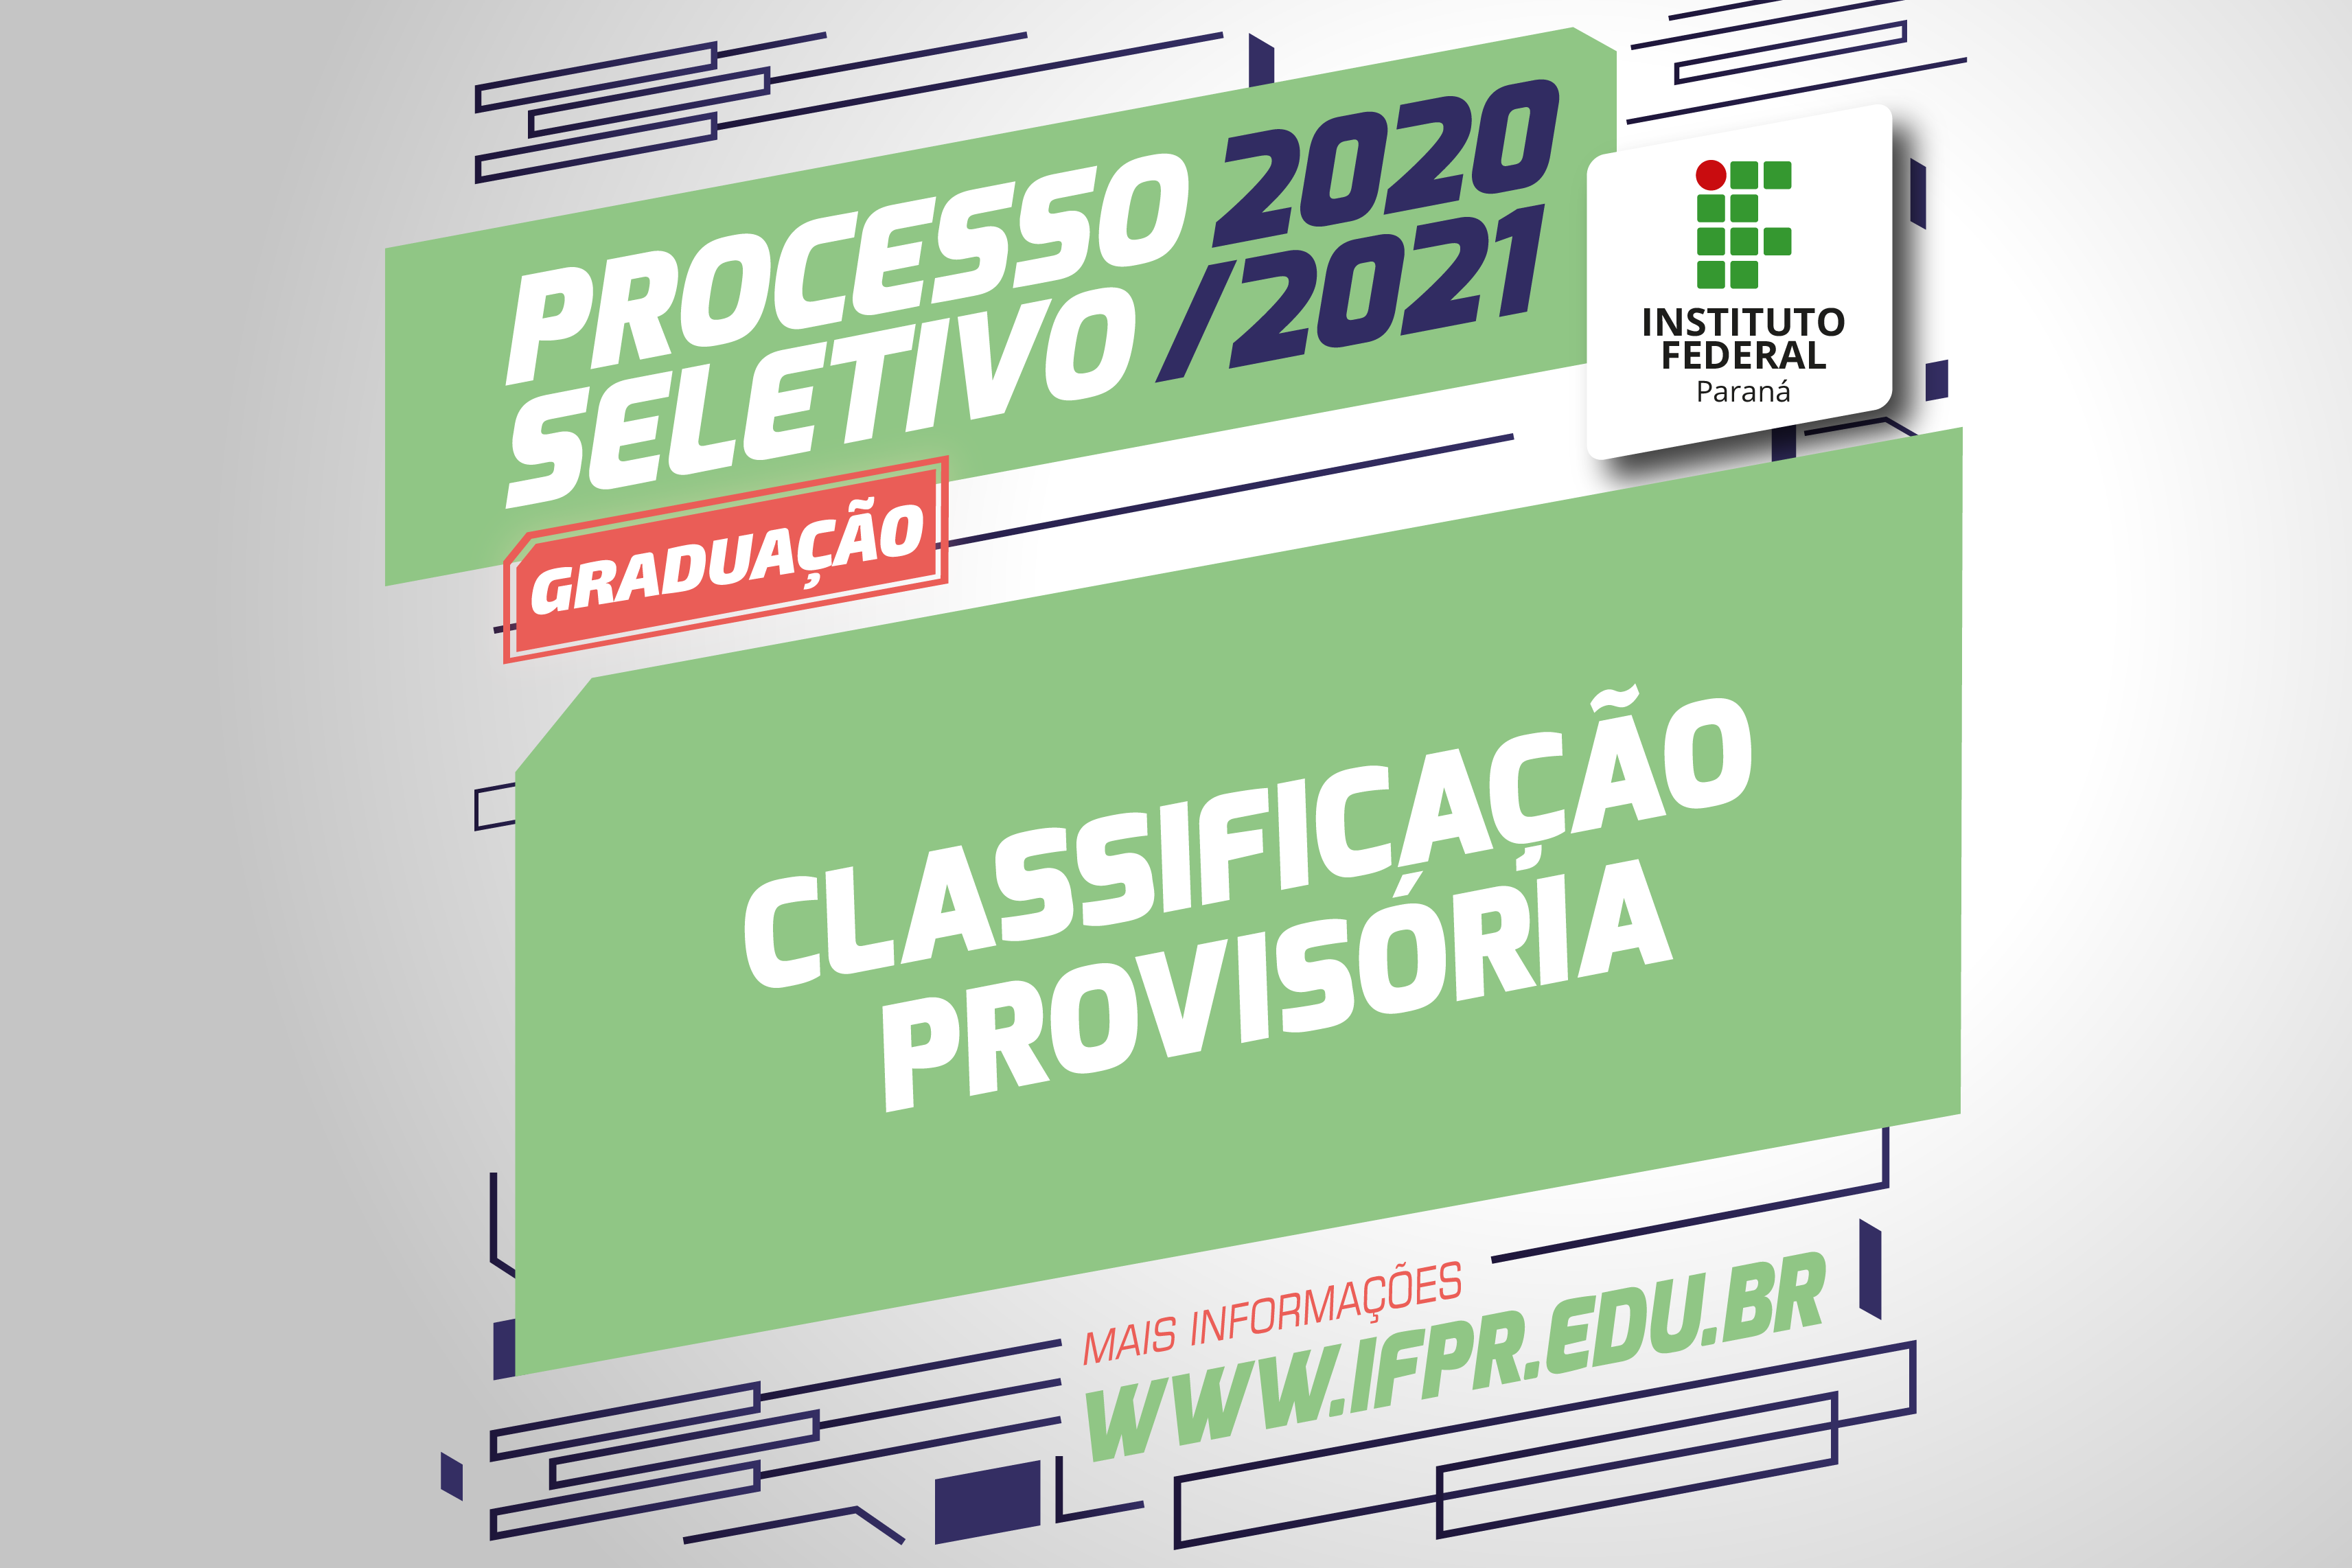 "Processo Seletivo 2020/2021. Graduação. Classificação provisória"